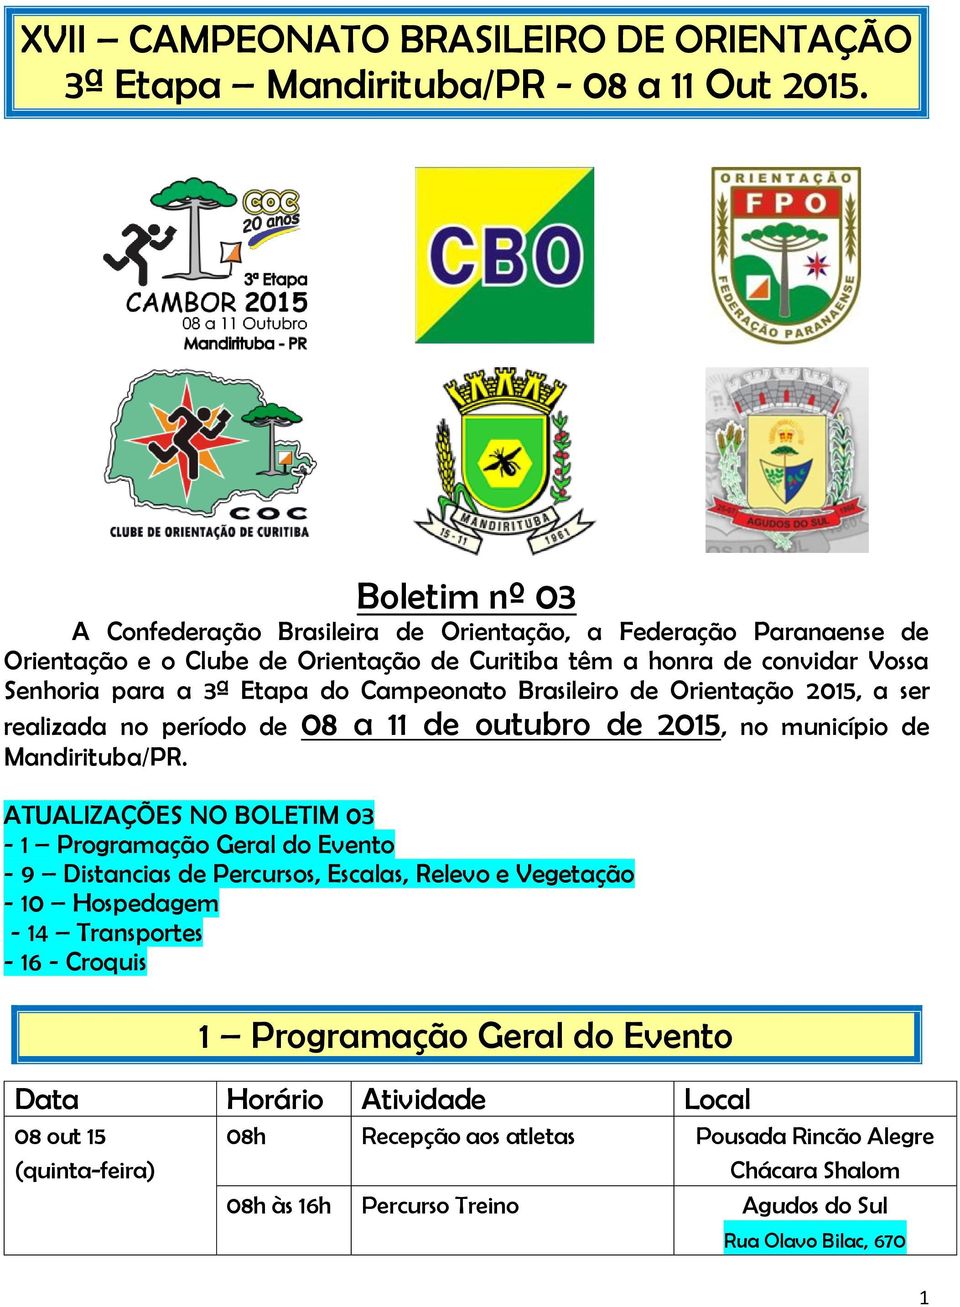 Campeonato Brasileiro de Orientação 2015, a ser realizada no período de 08 a 11 de outubro de 2015, no município de Mandirituba/PR.